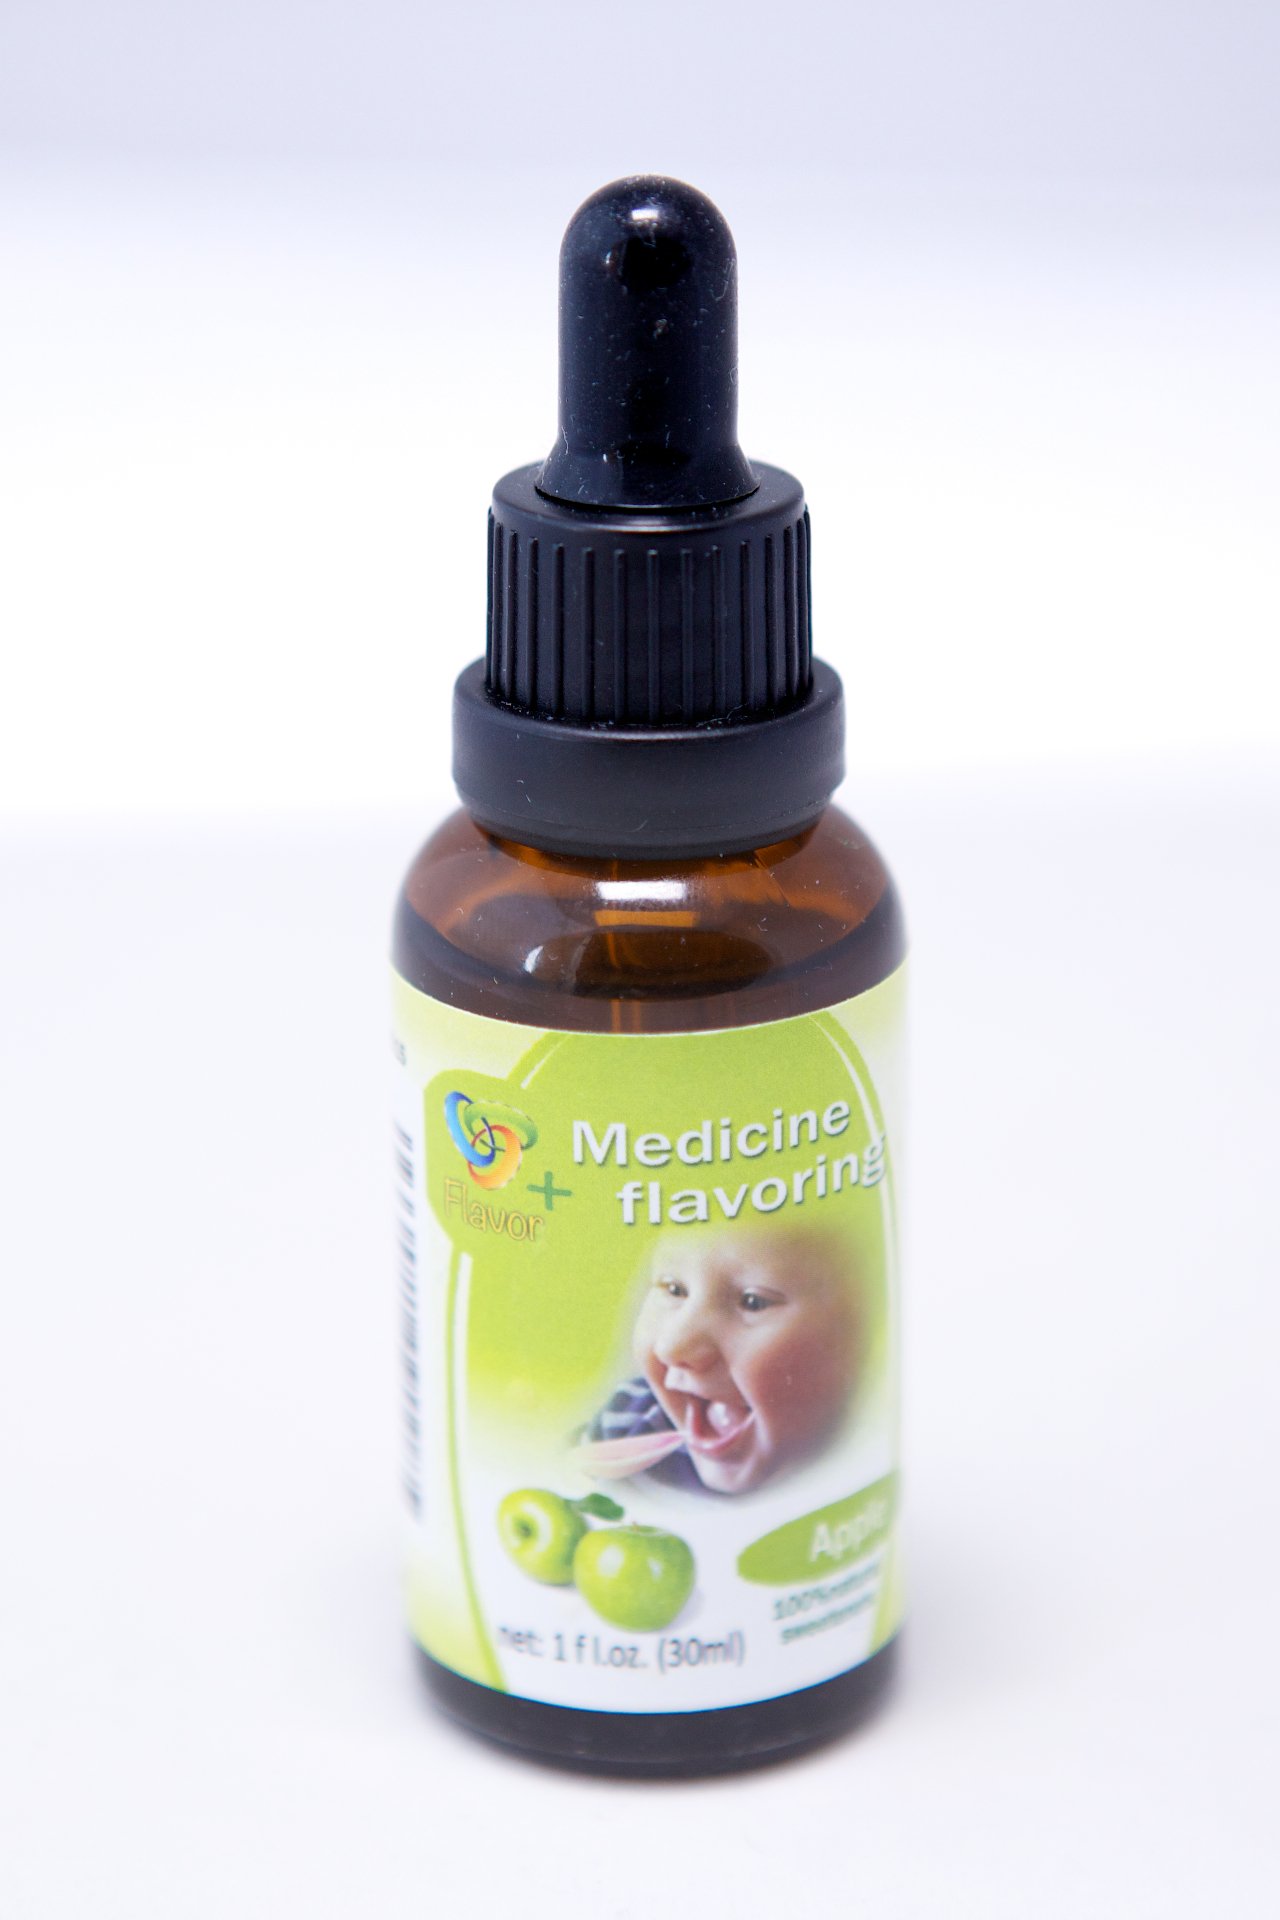 Yummy Meds Flavor Medicine Flavoring Drops for Baby Child Kids Bad Tasting Medicines (Apple)